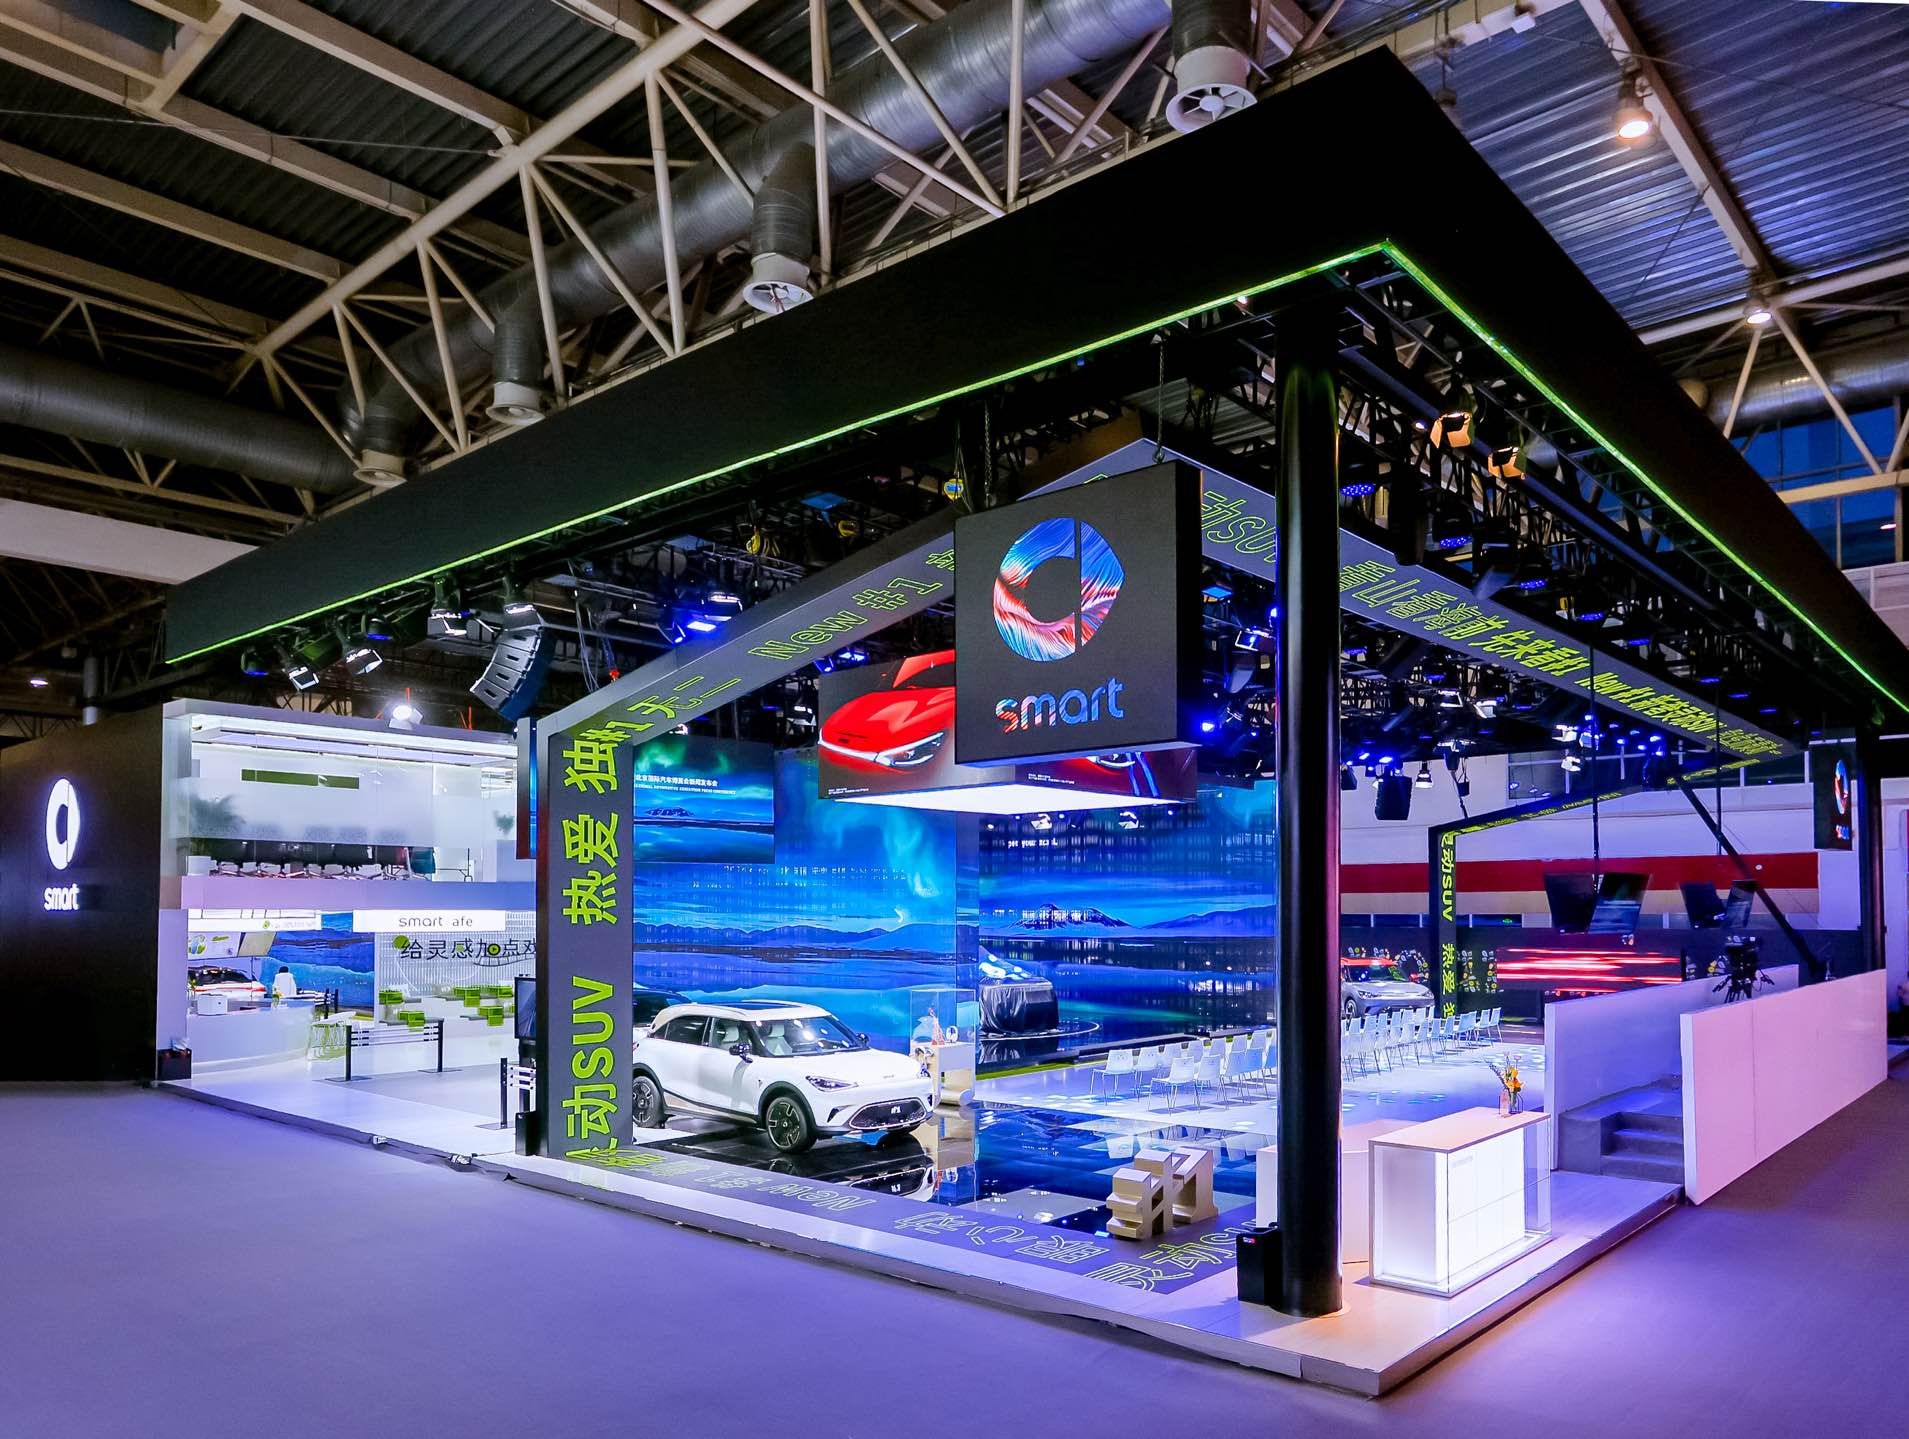 全新smart精靈#5概念車于北京車展全球首秀 